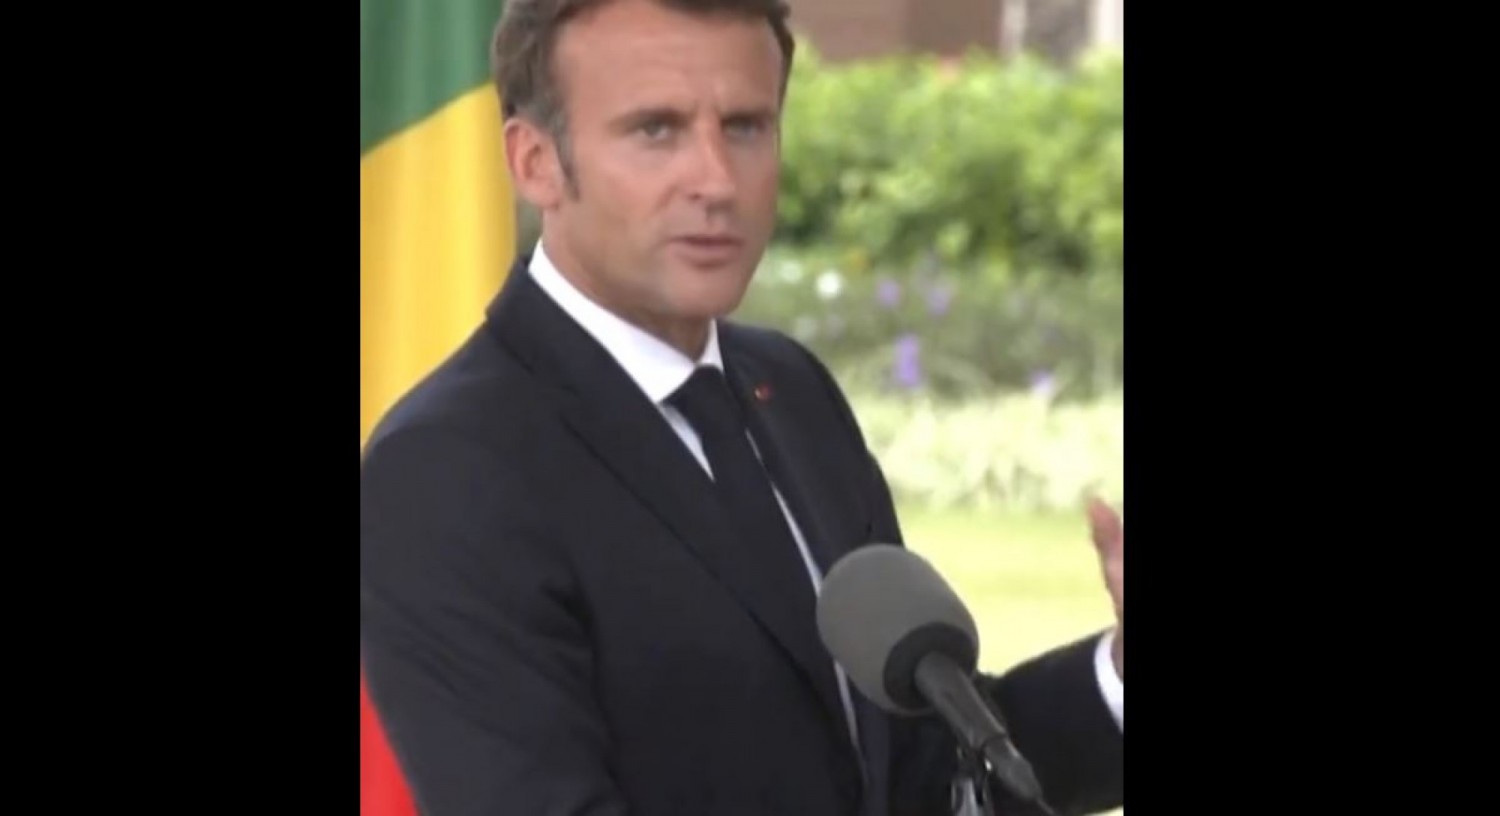 Bénin : Emmanuel Macron alerte les pays africains sur ce qu'il considère comme les objectifs cachés de Moscou